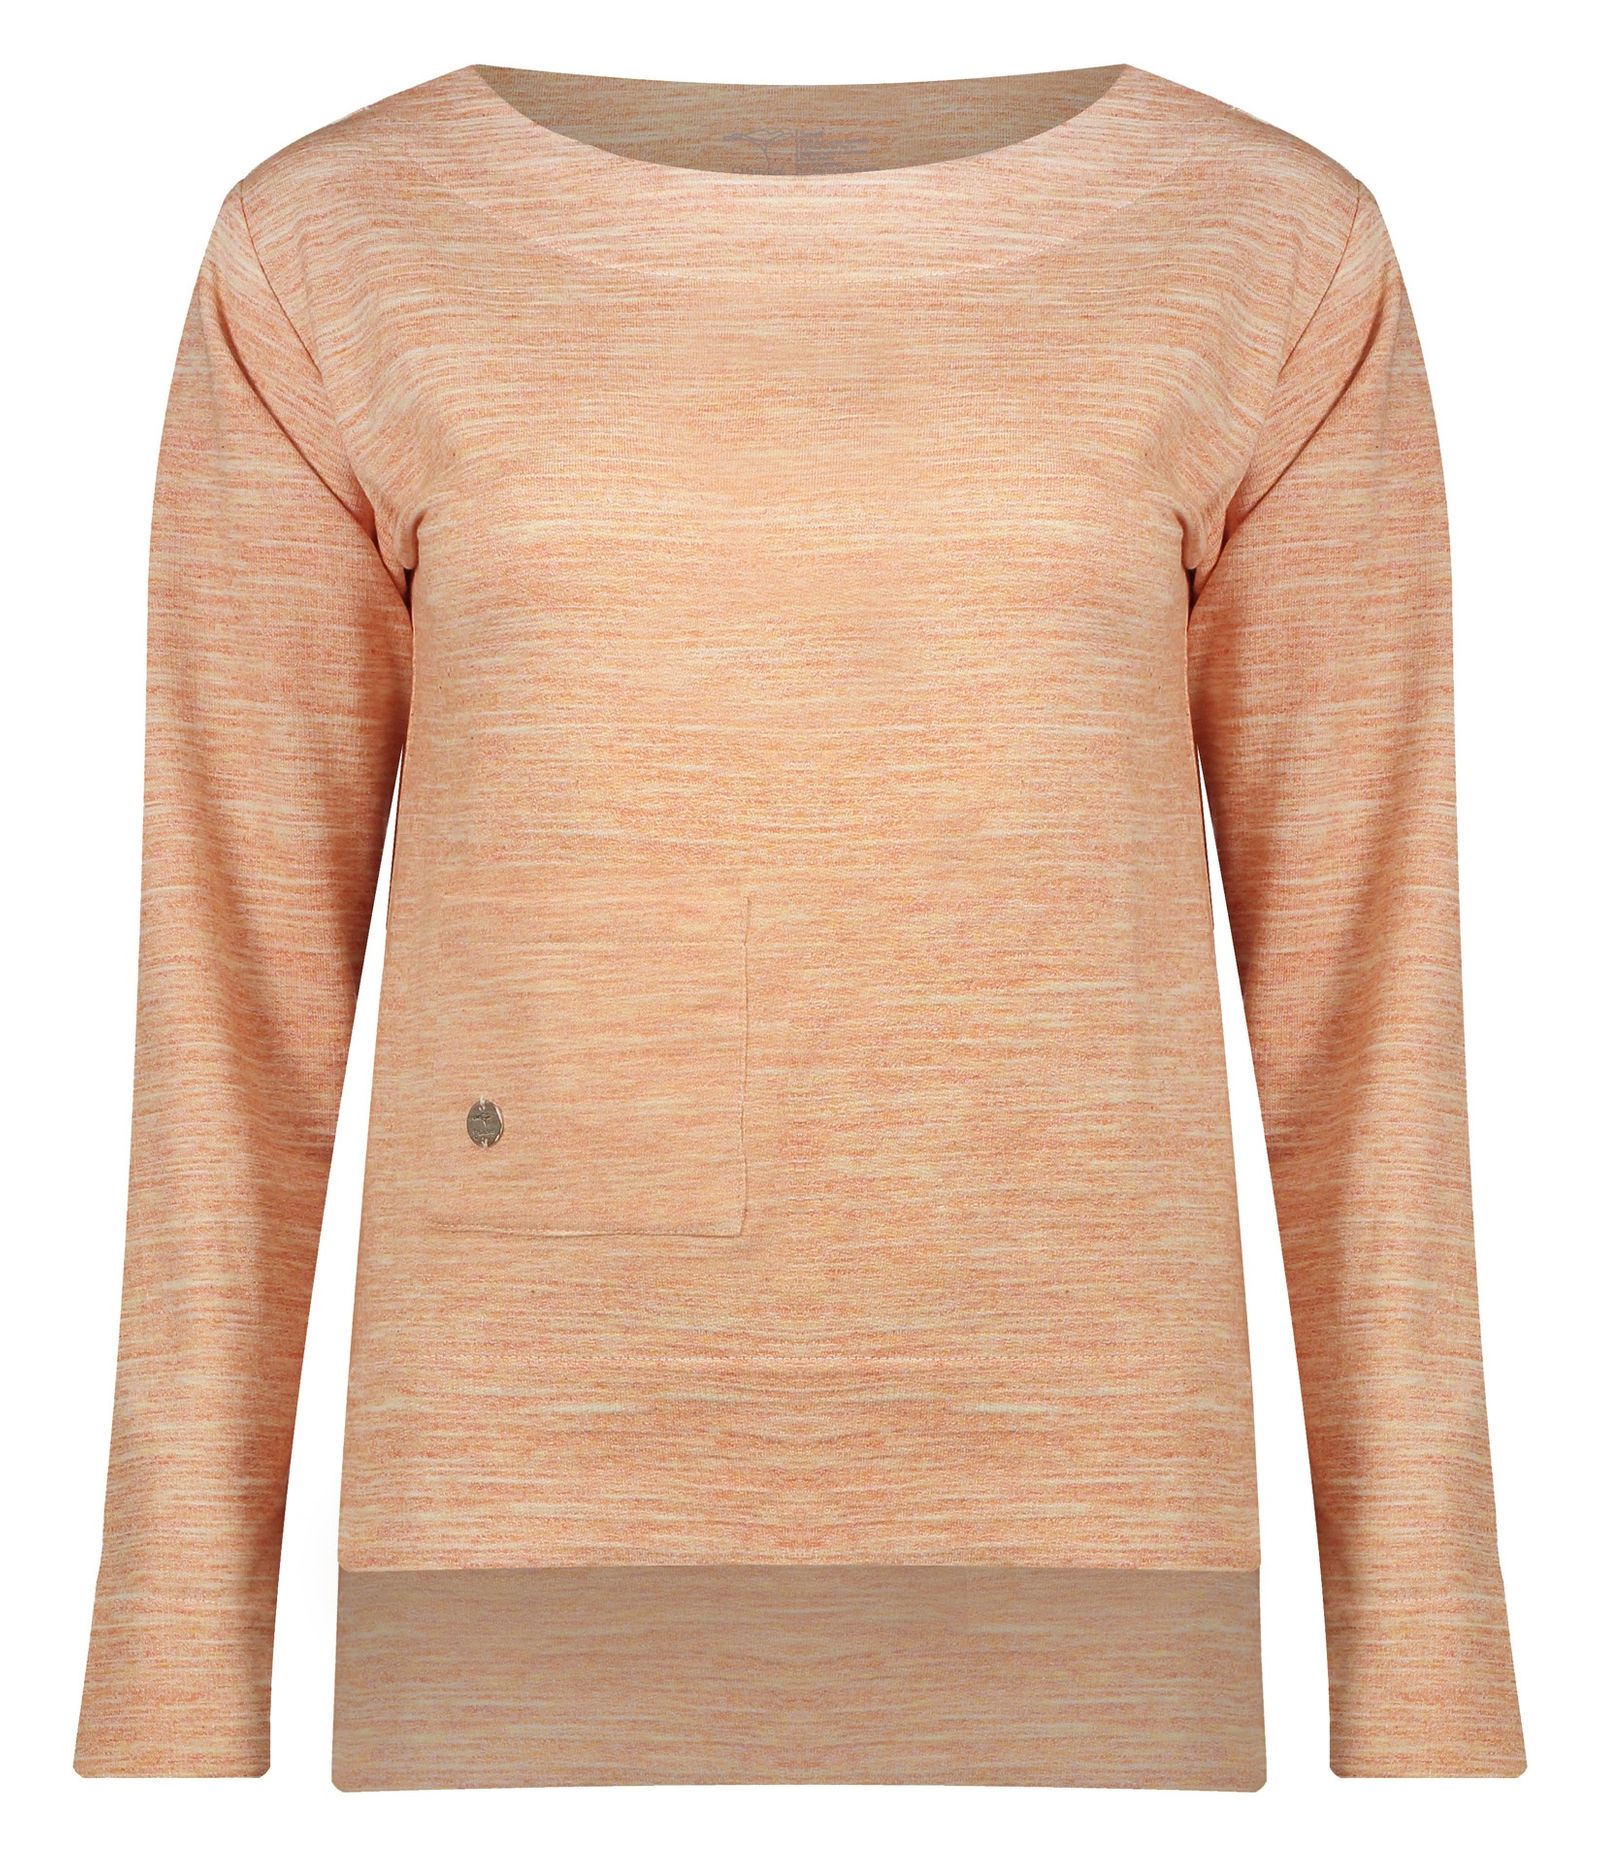 تی شرت زنانه گارودی مدل 1003107023-16 - نارنجی - 2